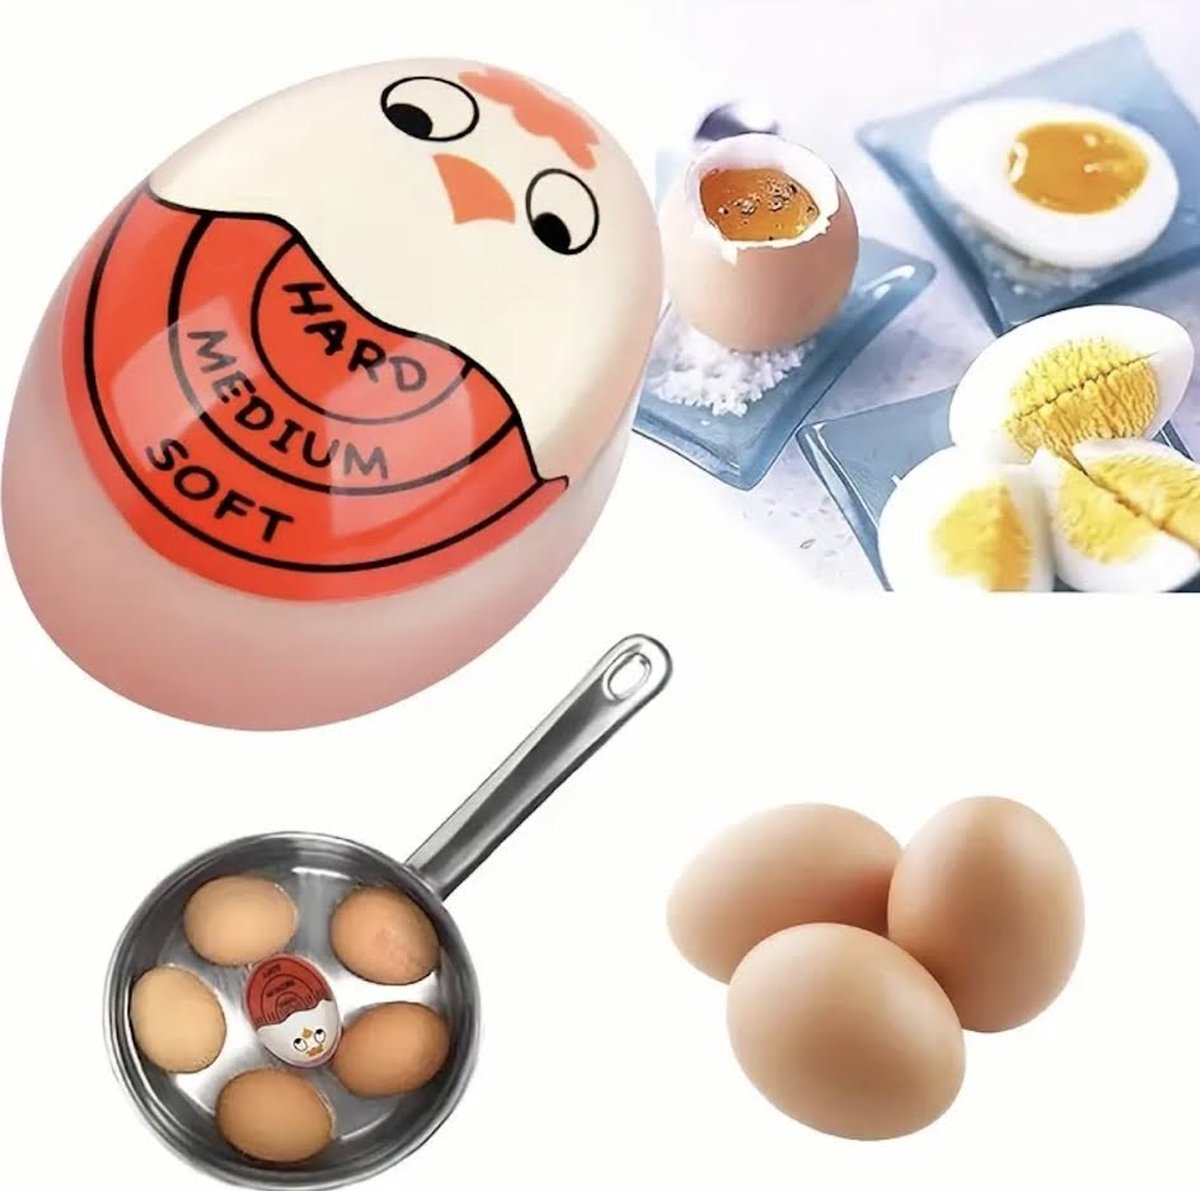 Ei kookwekker - Egg timer - Eierwekker - Eierkoker - Eiertimer - rood - Timer universeel - Kookwekker ei - Wekker ei - gadget